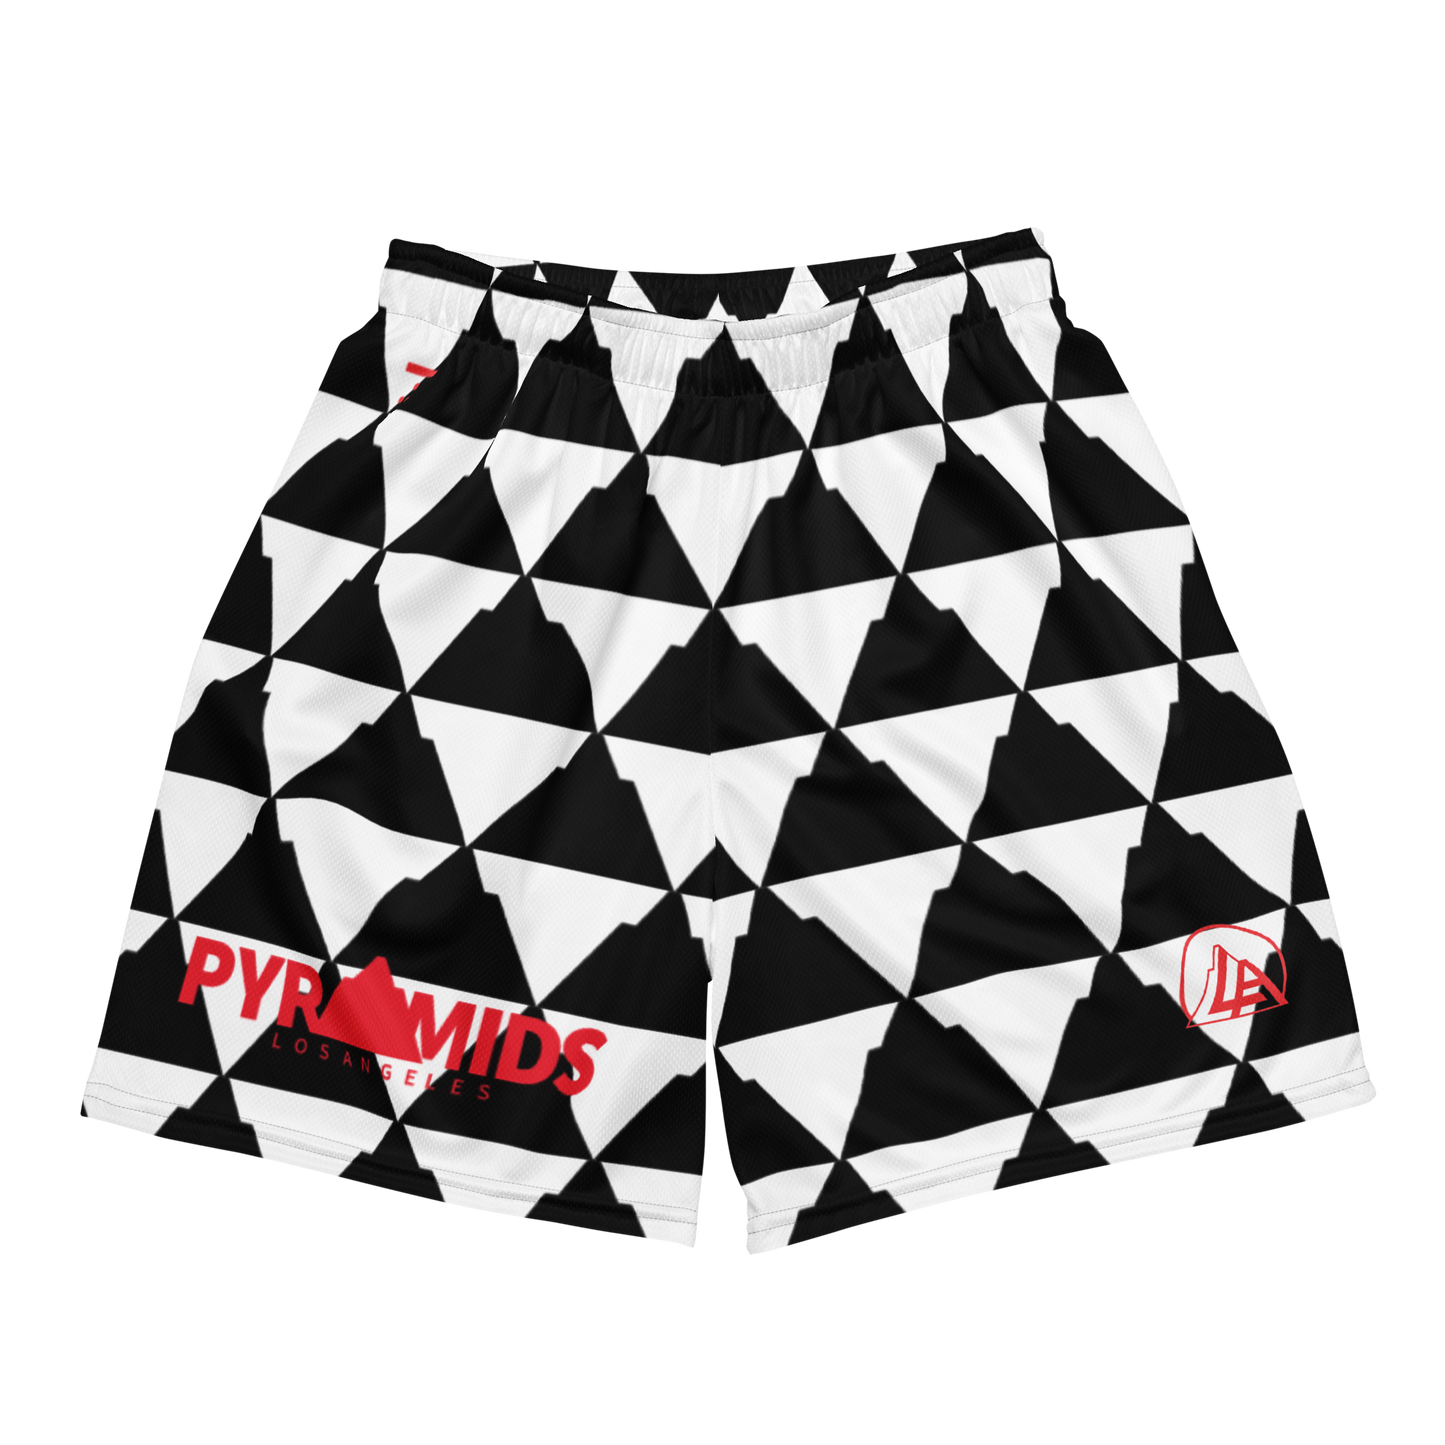 Pyramid Pattern Mesh Shorts